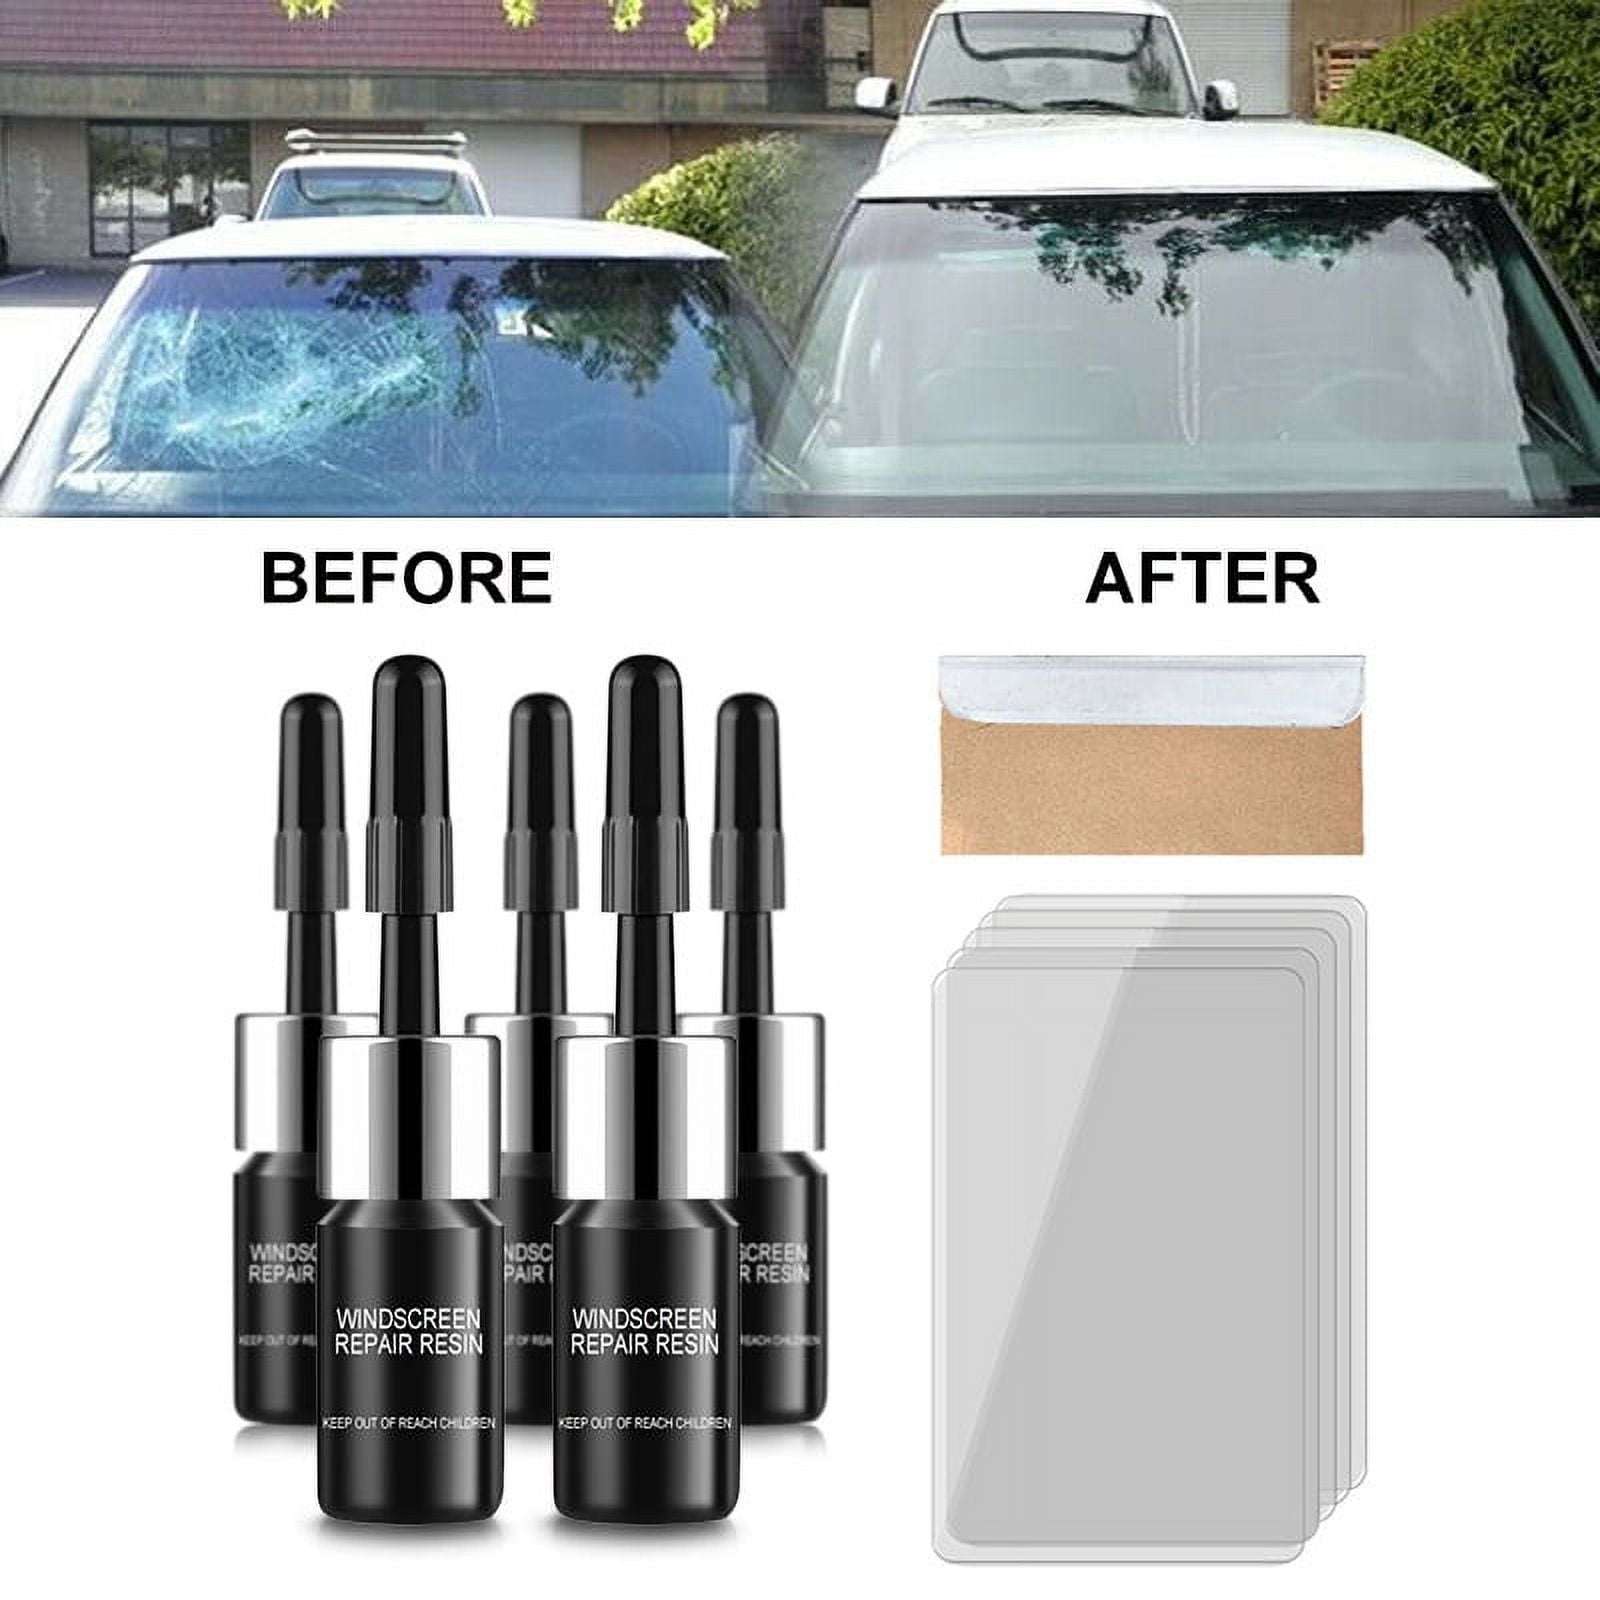 2pcs Windshield Crack Repair Kit Car Window Glass Liquid Repair Kit, Car  Nanofluid Glass Filled Car Windshield Tool